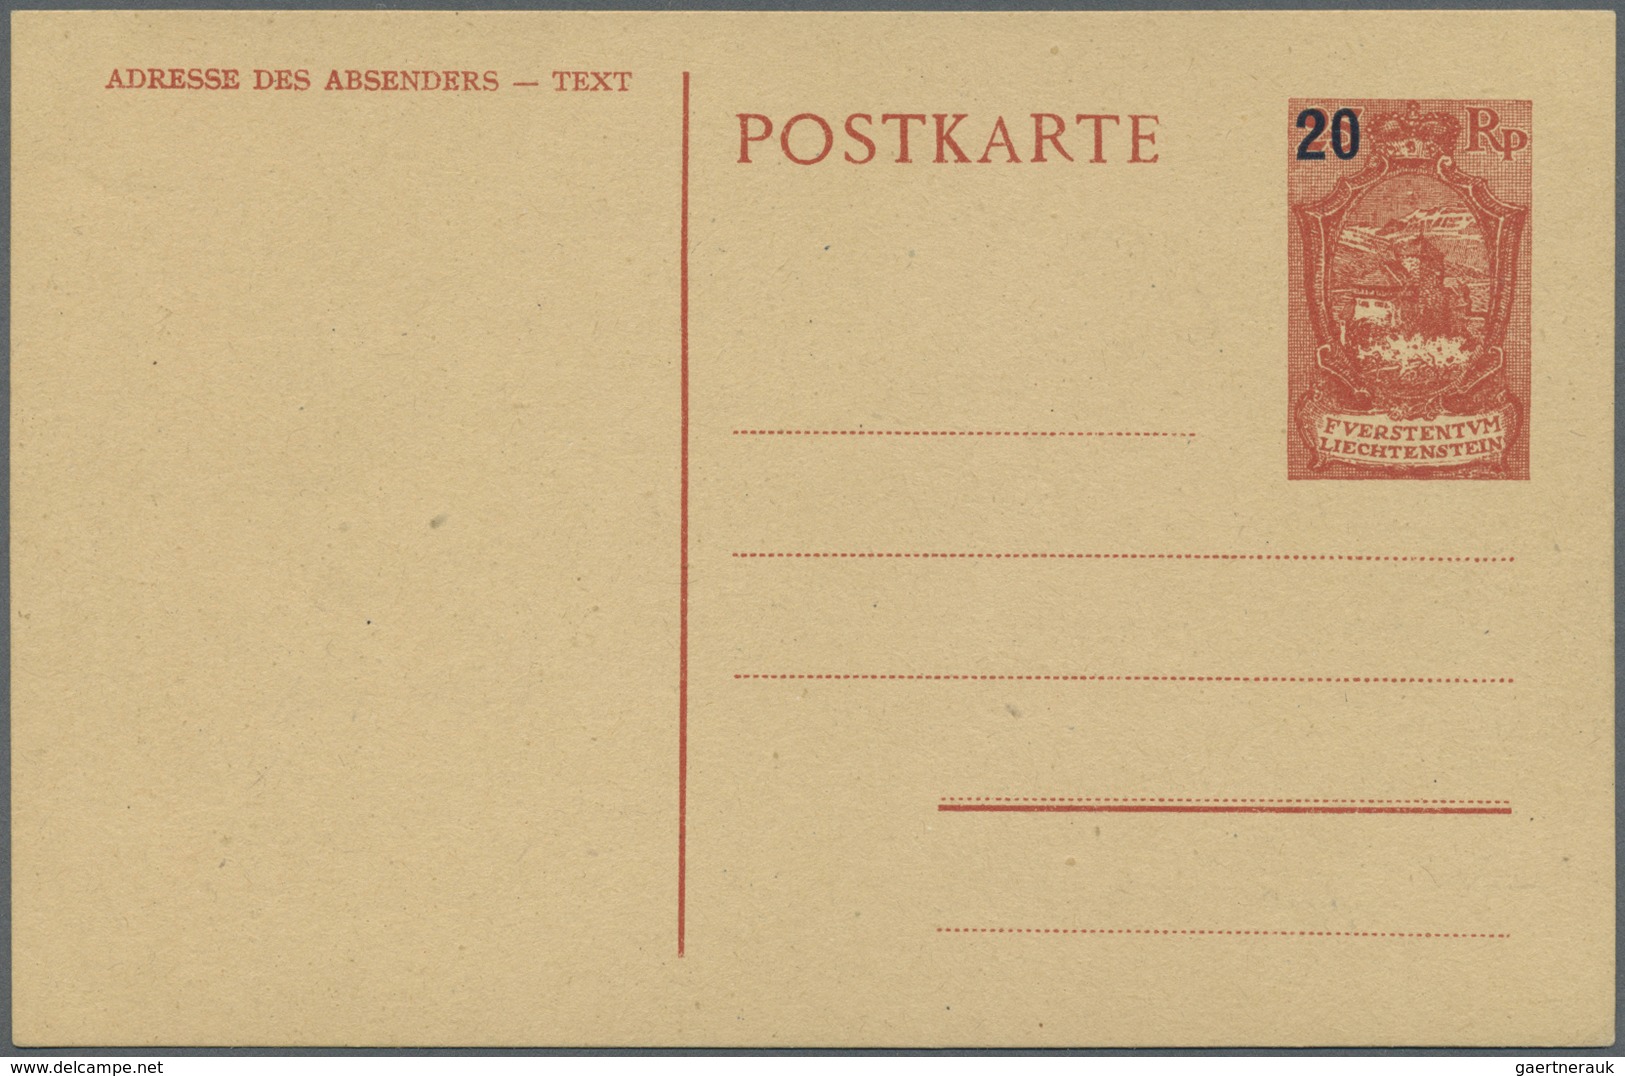 Br/GA/ Liechtenstein: 1918/1960, netter Sammlungsposten von über 100 Briefen und Ganzsachen, dabei bessere